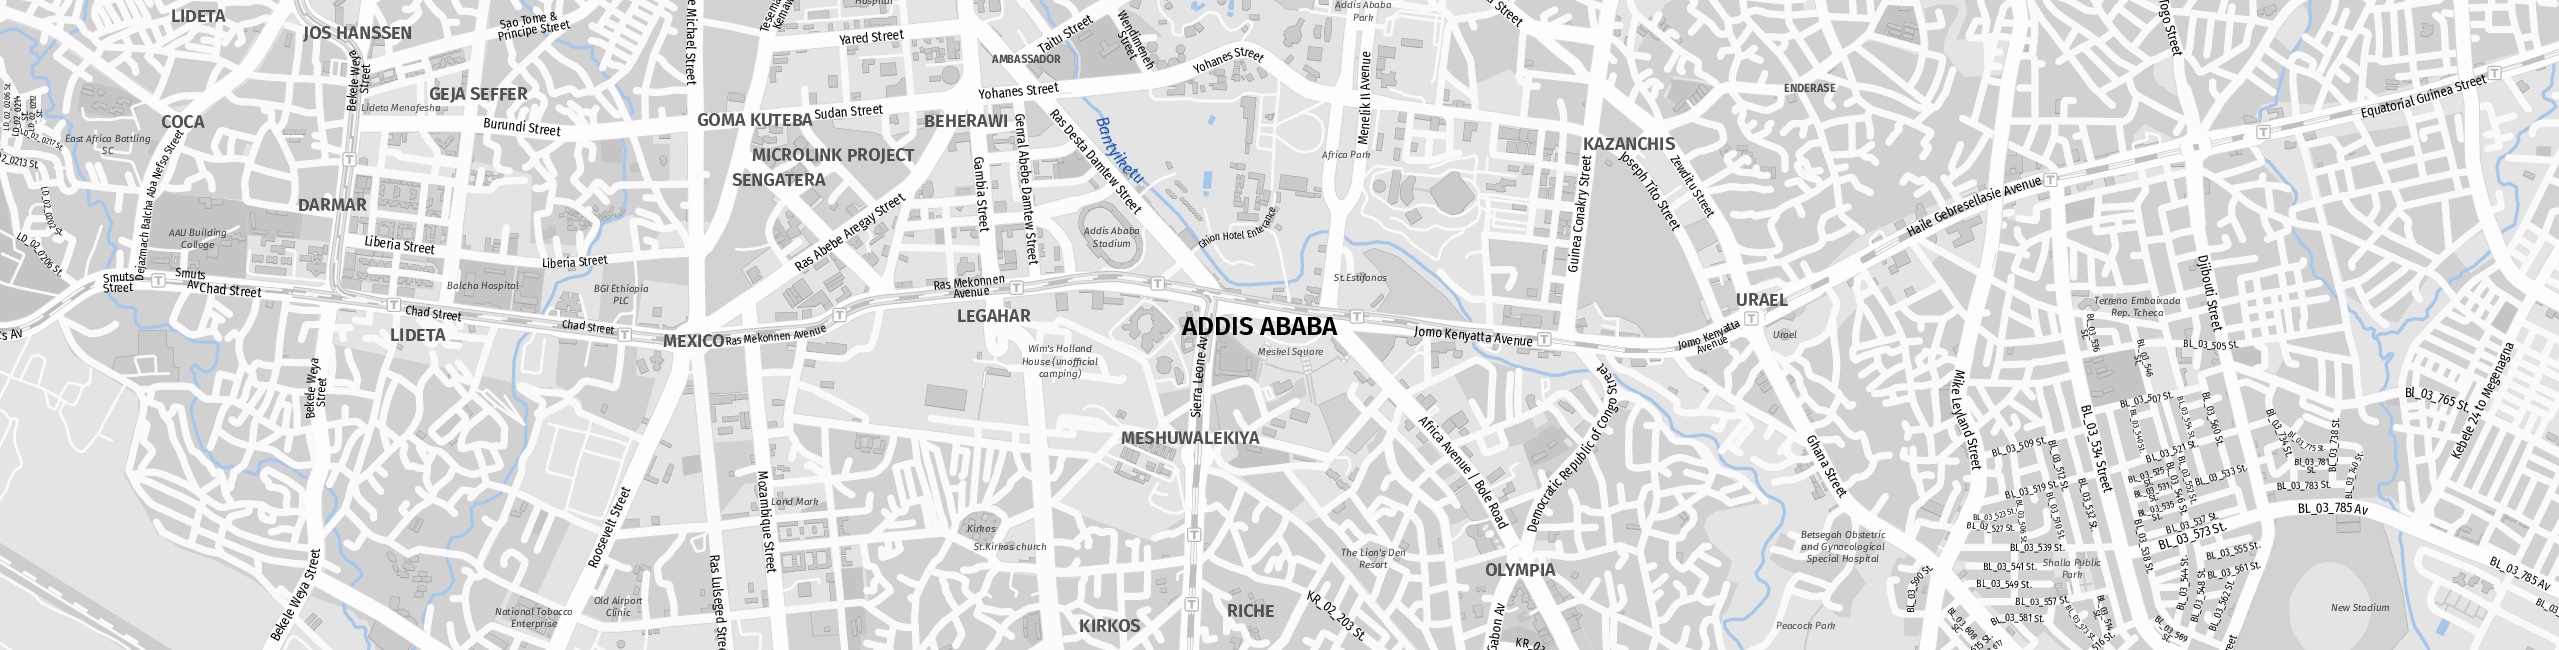 Stadtplan Addis Ababa zum Downloaden.